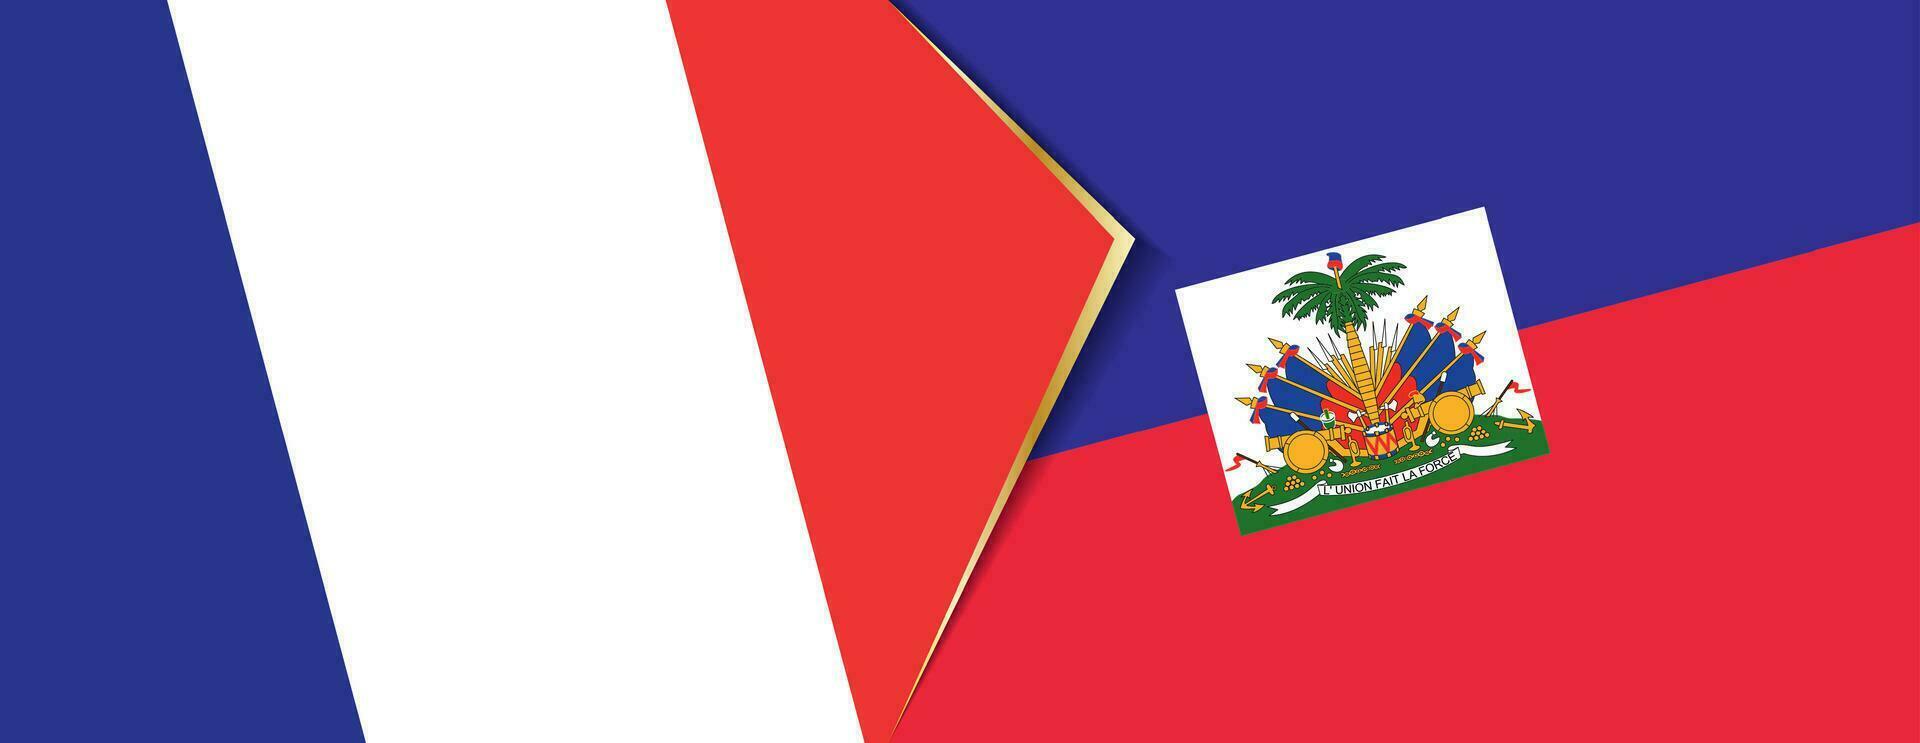 Frankreich und Haiti Flaggen, zwei Vektor Flaggen.